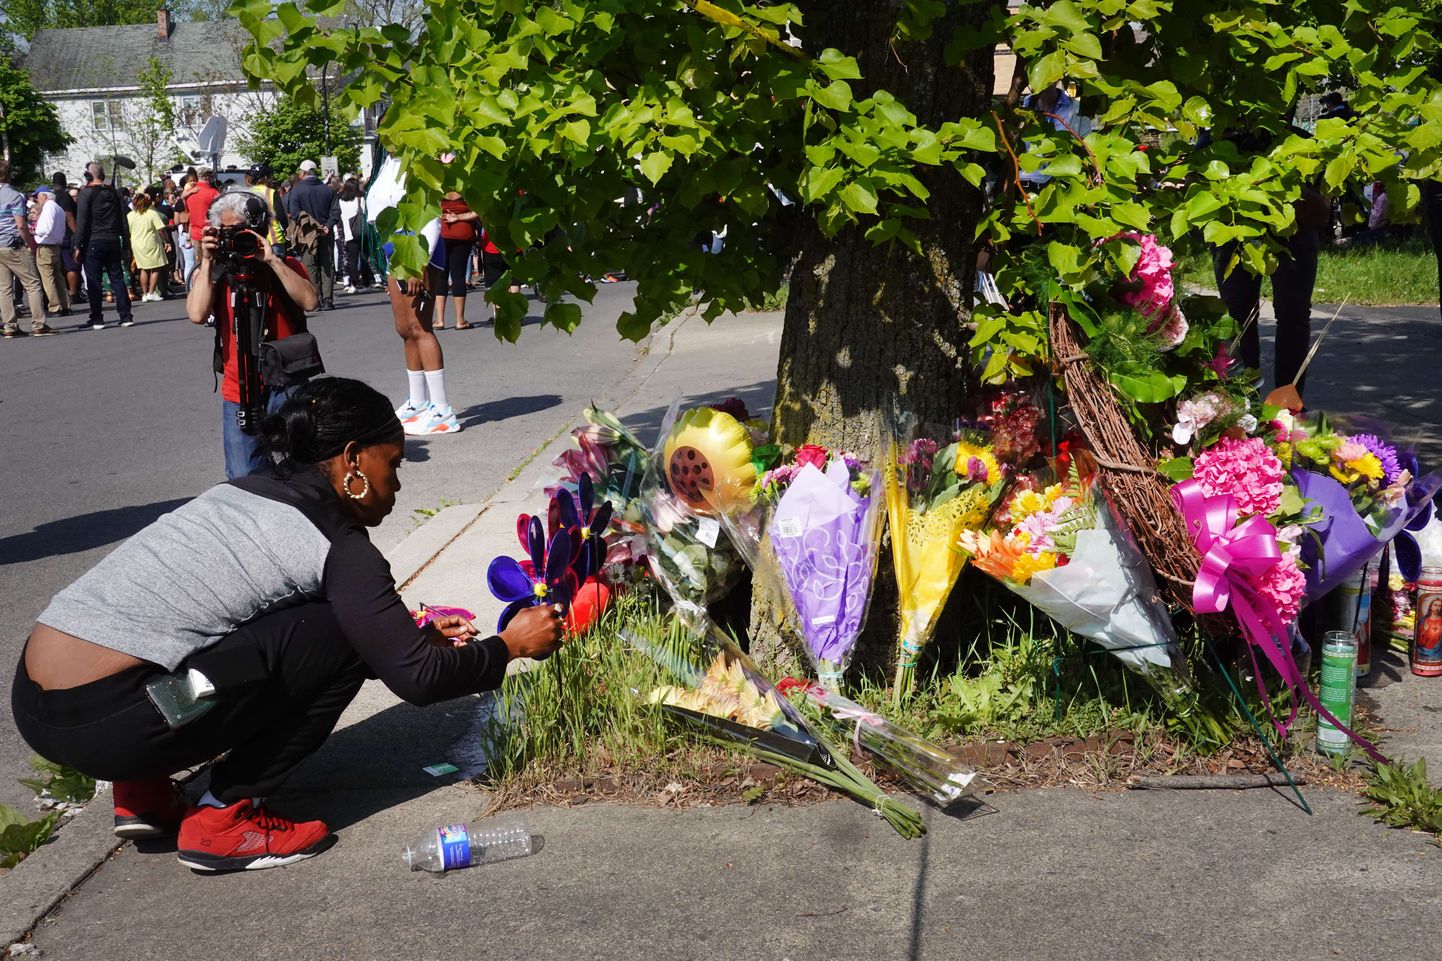 Buffalo supermarketis tapeti kümme inimest. Inimeste hukkumispaigale tuuakse lilli ja küünlaid.